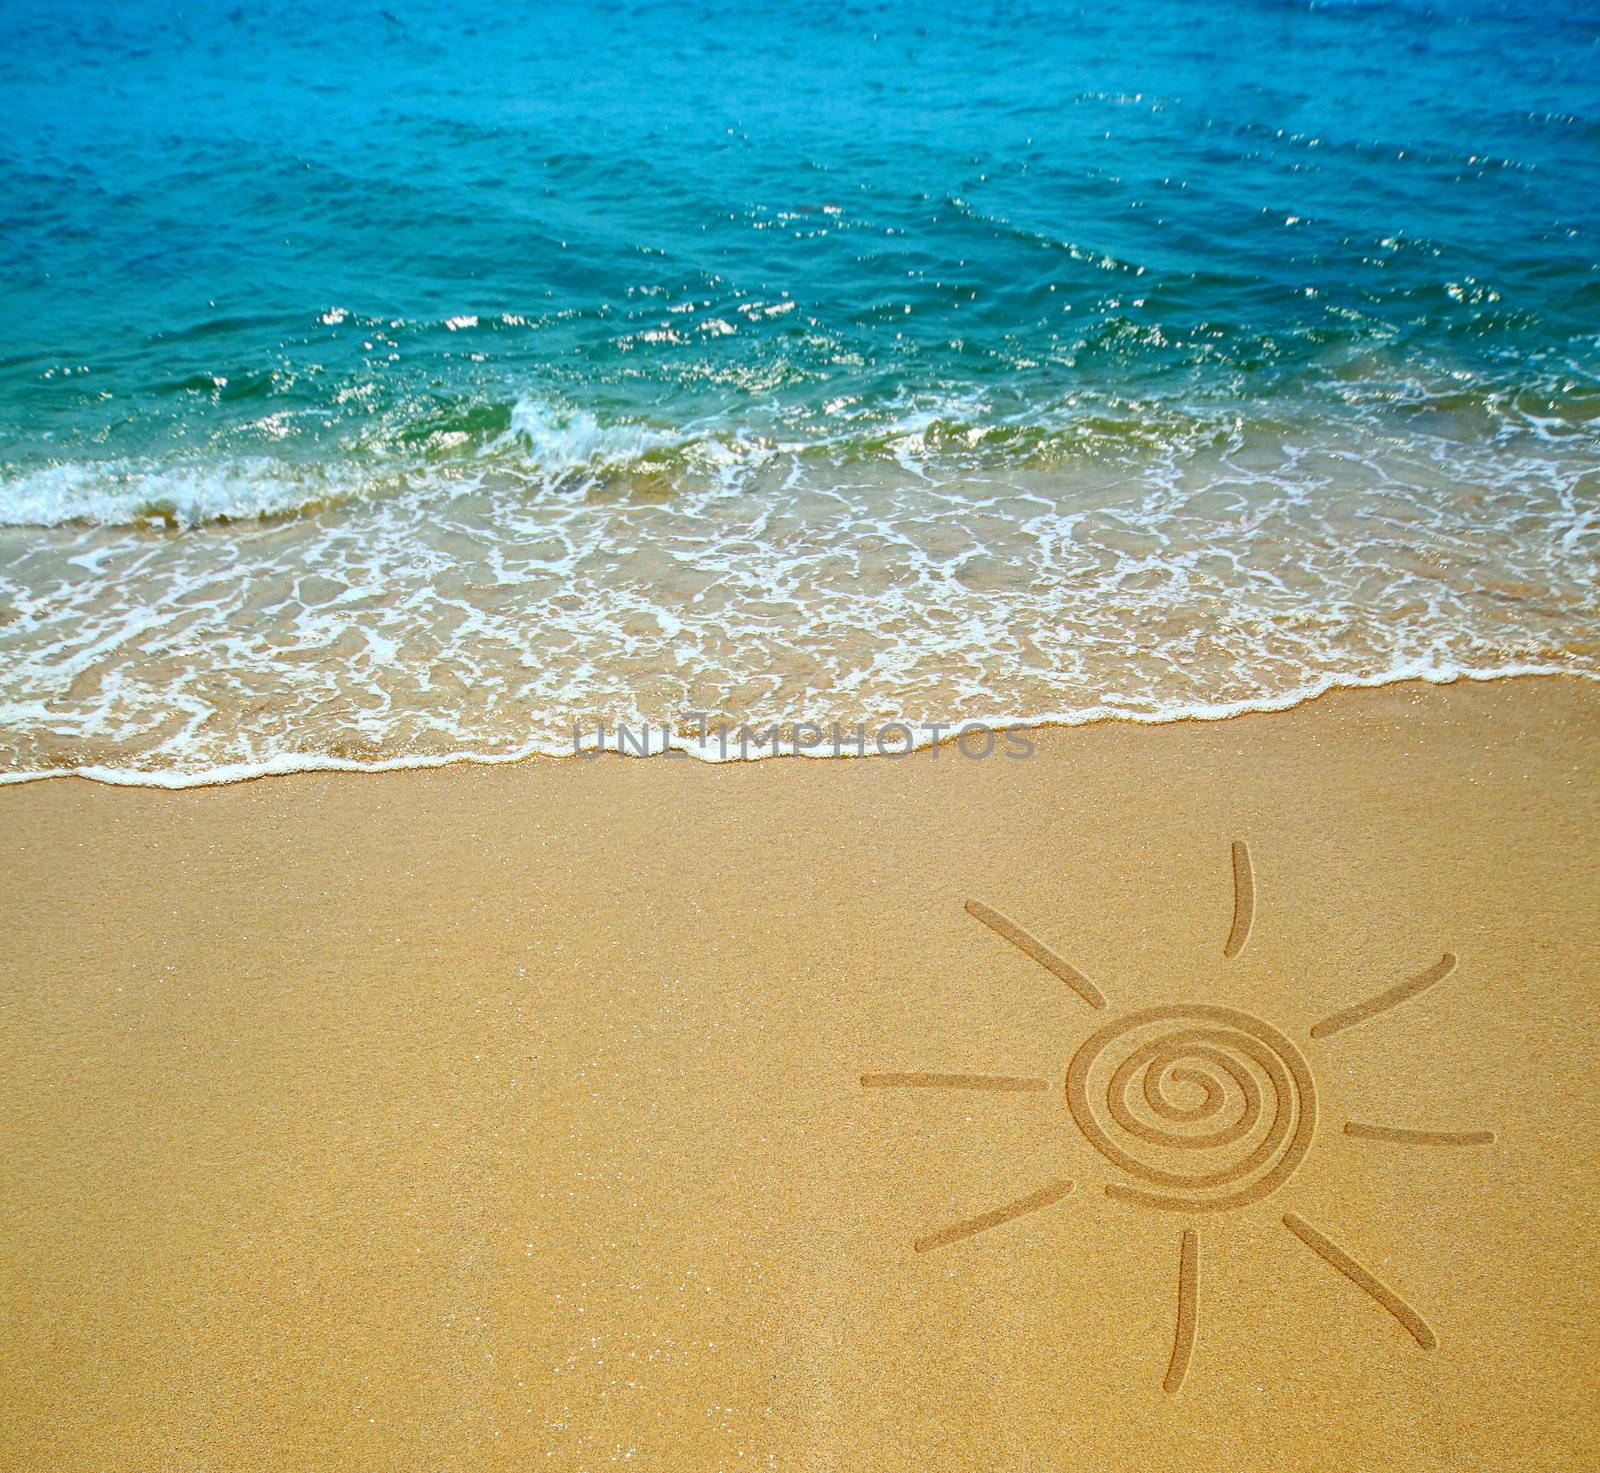 sun drawing on a beach